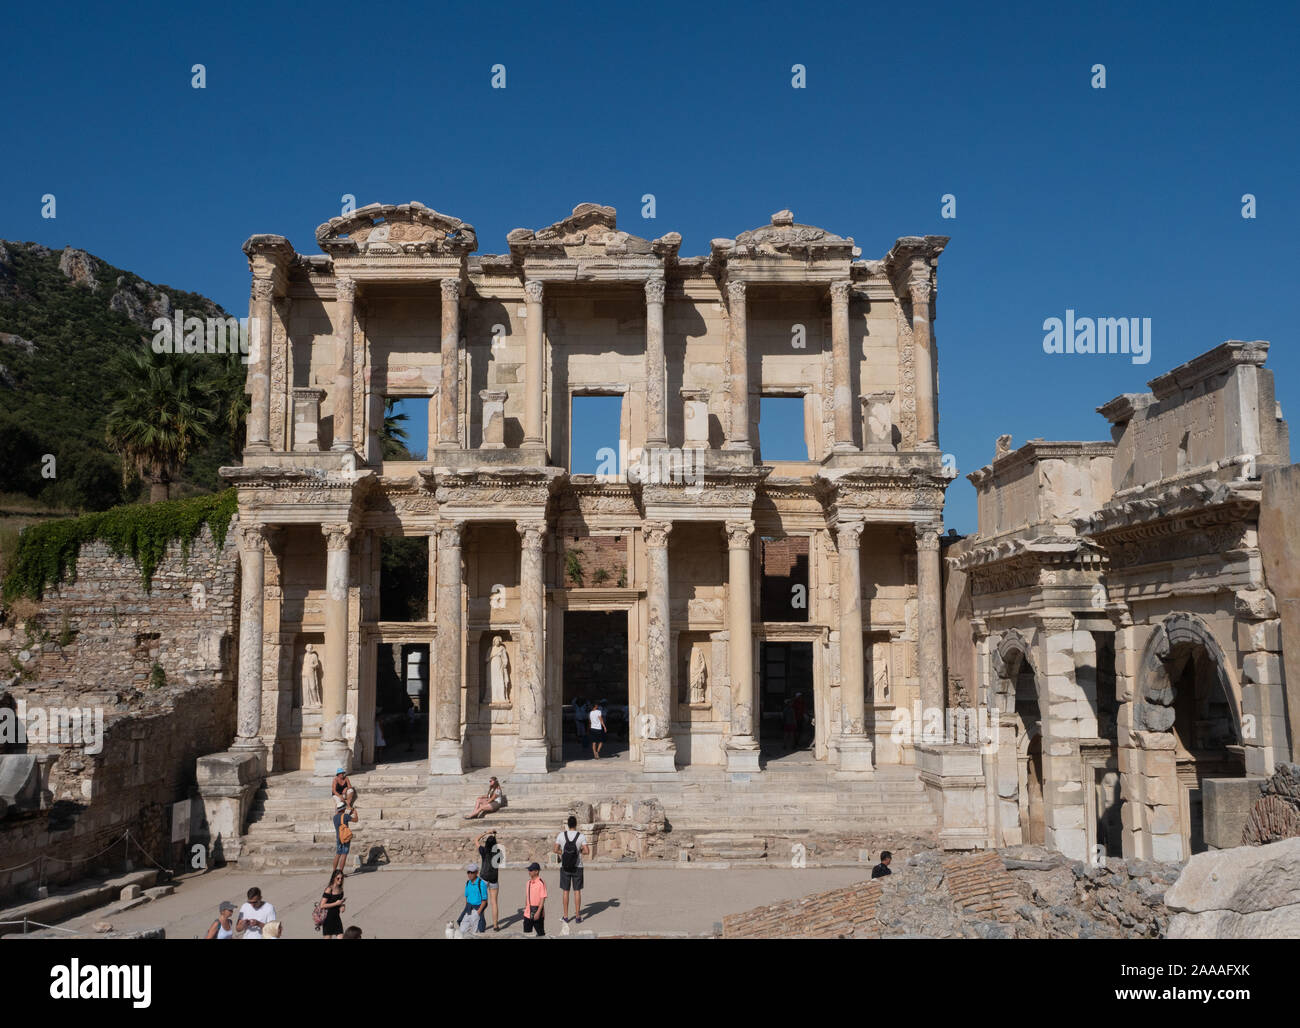 Die celsus Bibliothek in Ephesus in der Türkei mit Statuen in den Nischen. Säulen und geschnitzten Kapitellen unterstützen die Pauken und geschnitzten Friese der Fassade. Stockfoto